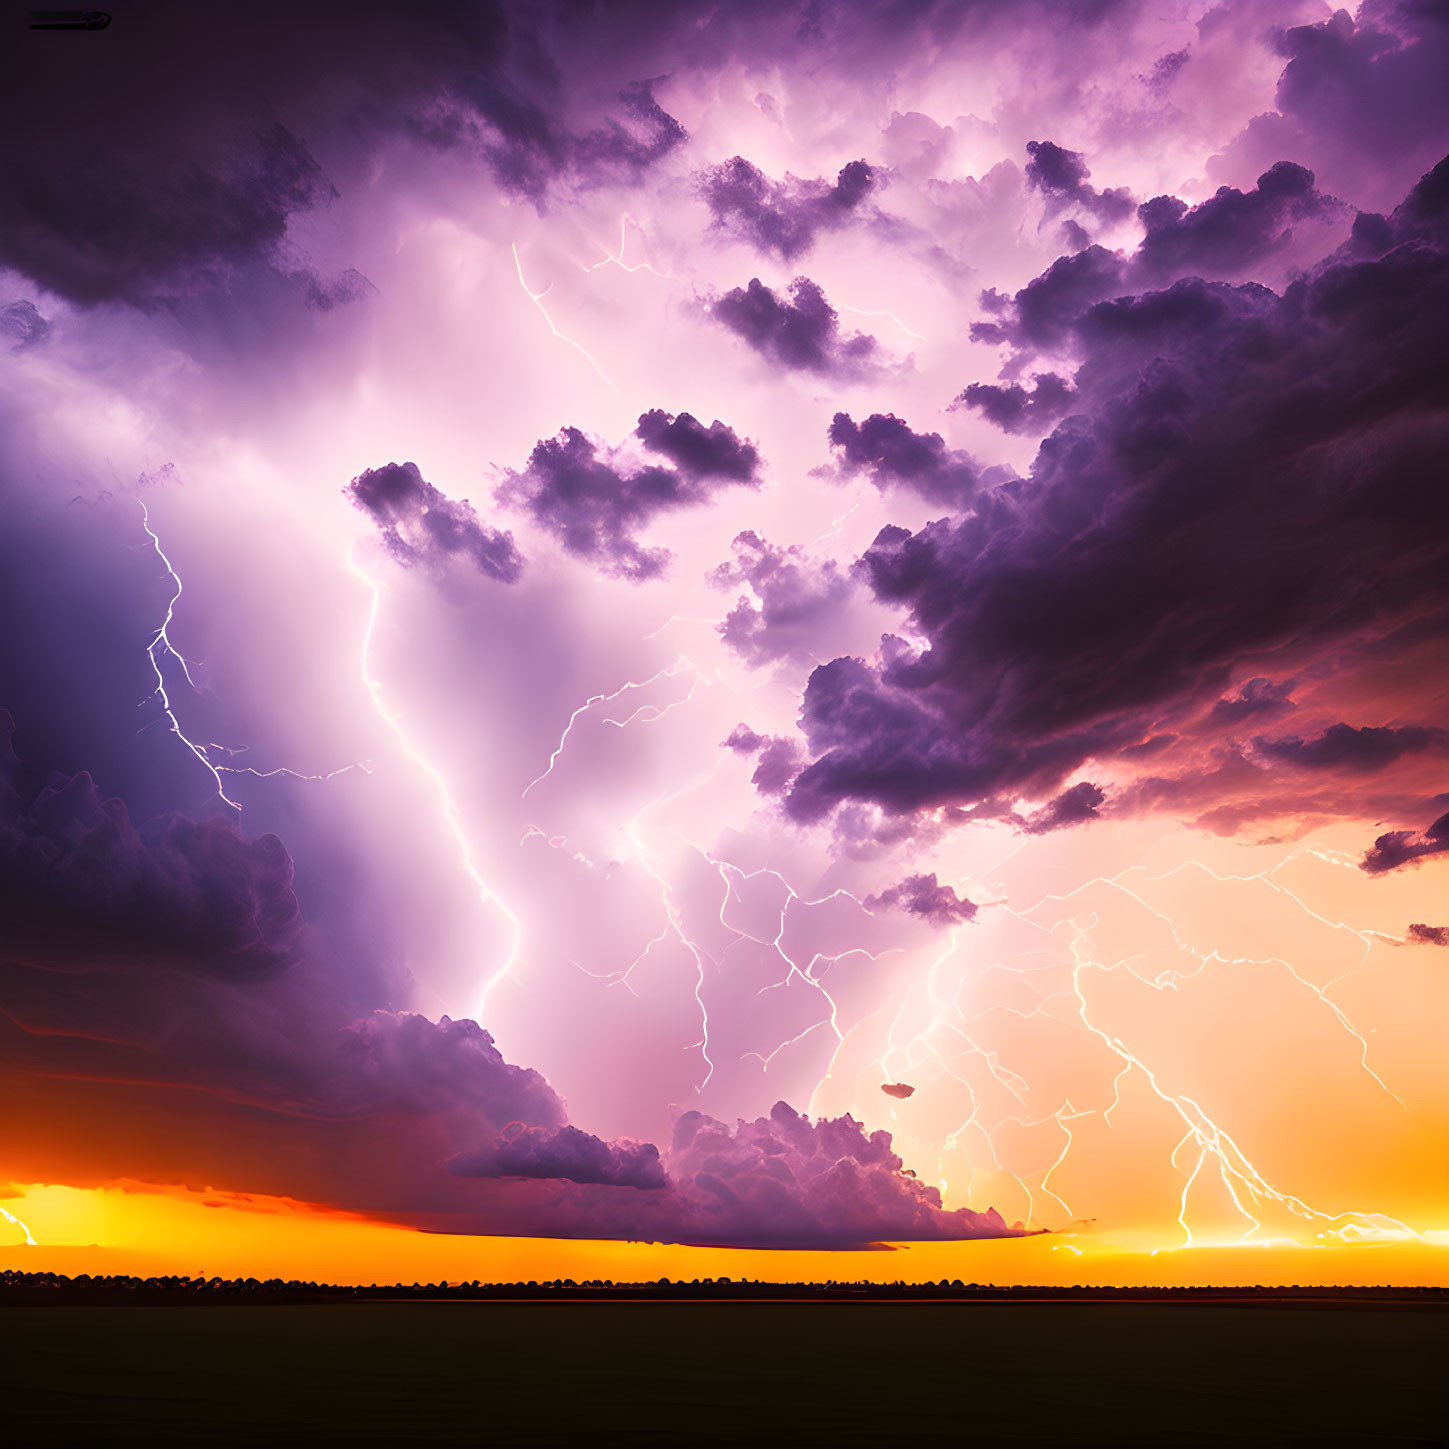 Multiple lightning strikes in dramatic sunset thunderstorm